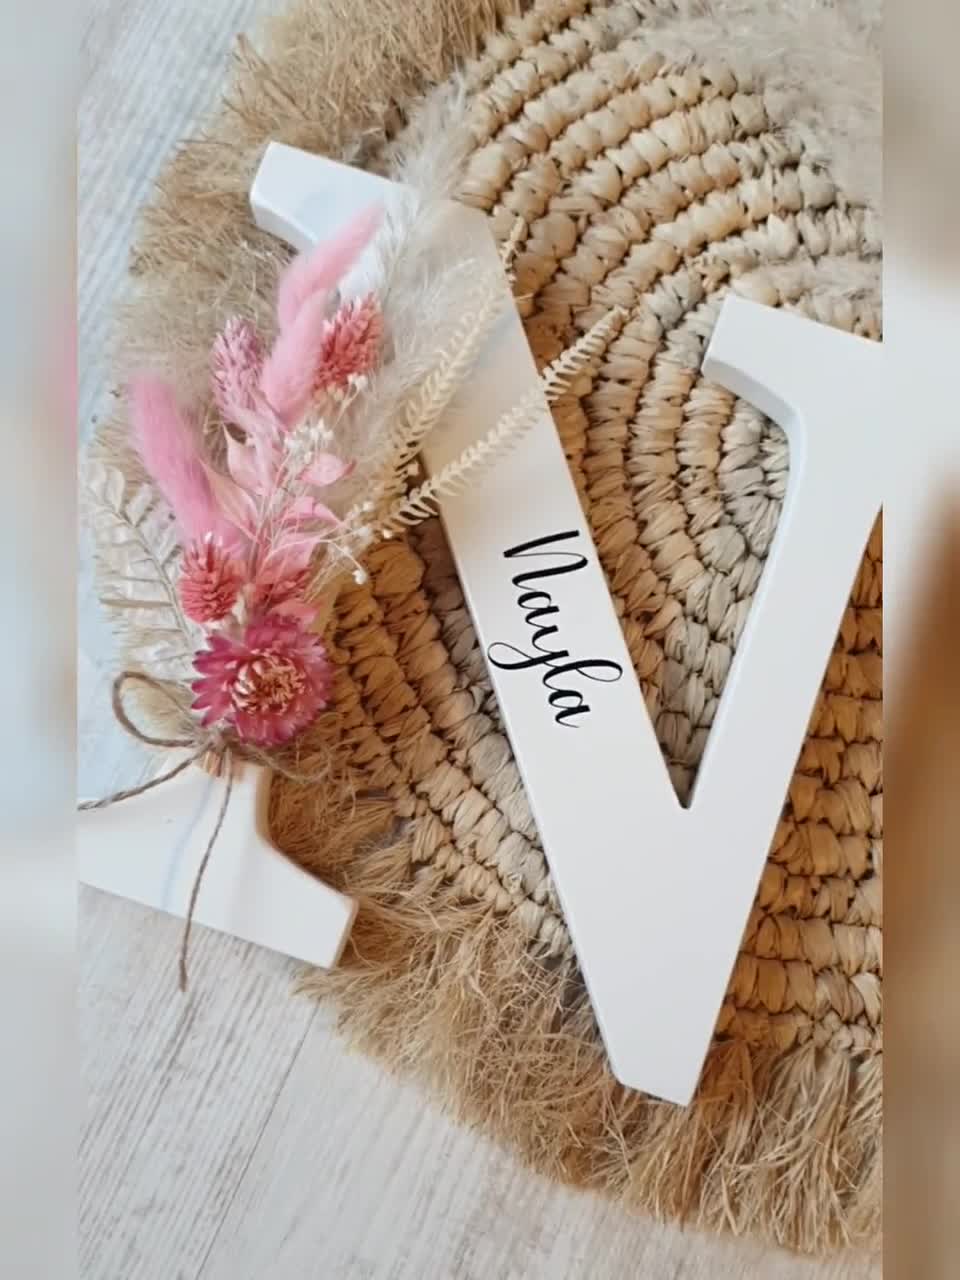 Letras decoradas con flores – La Fiesta de Olivia